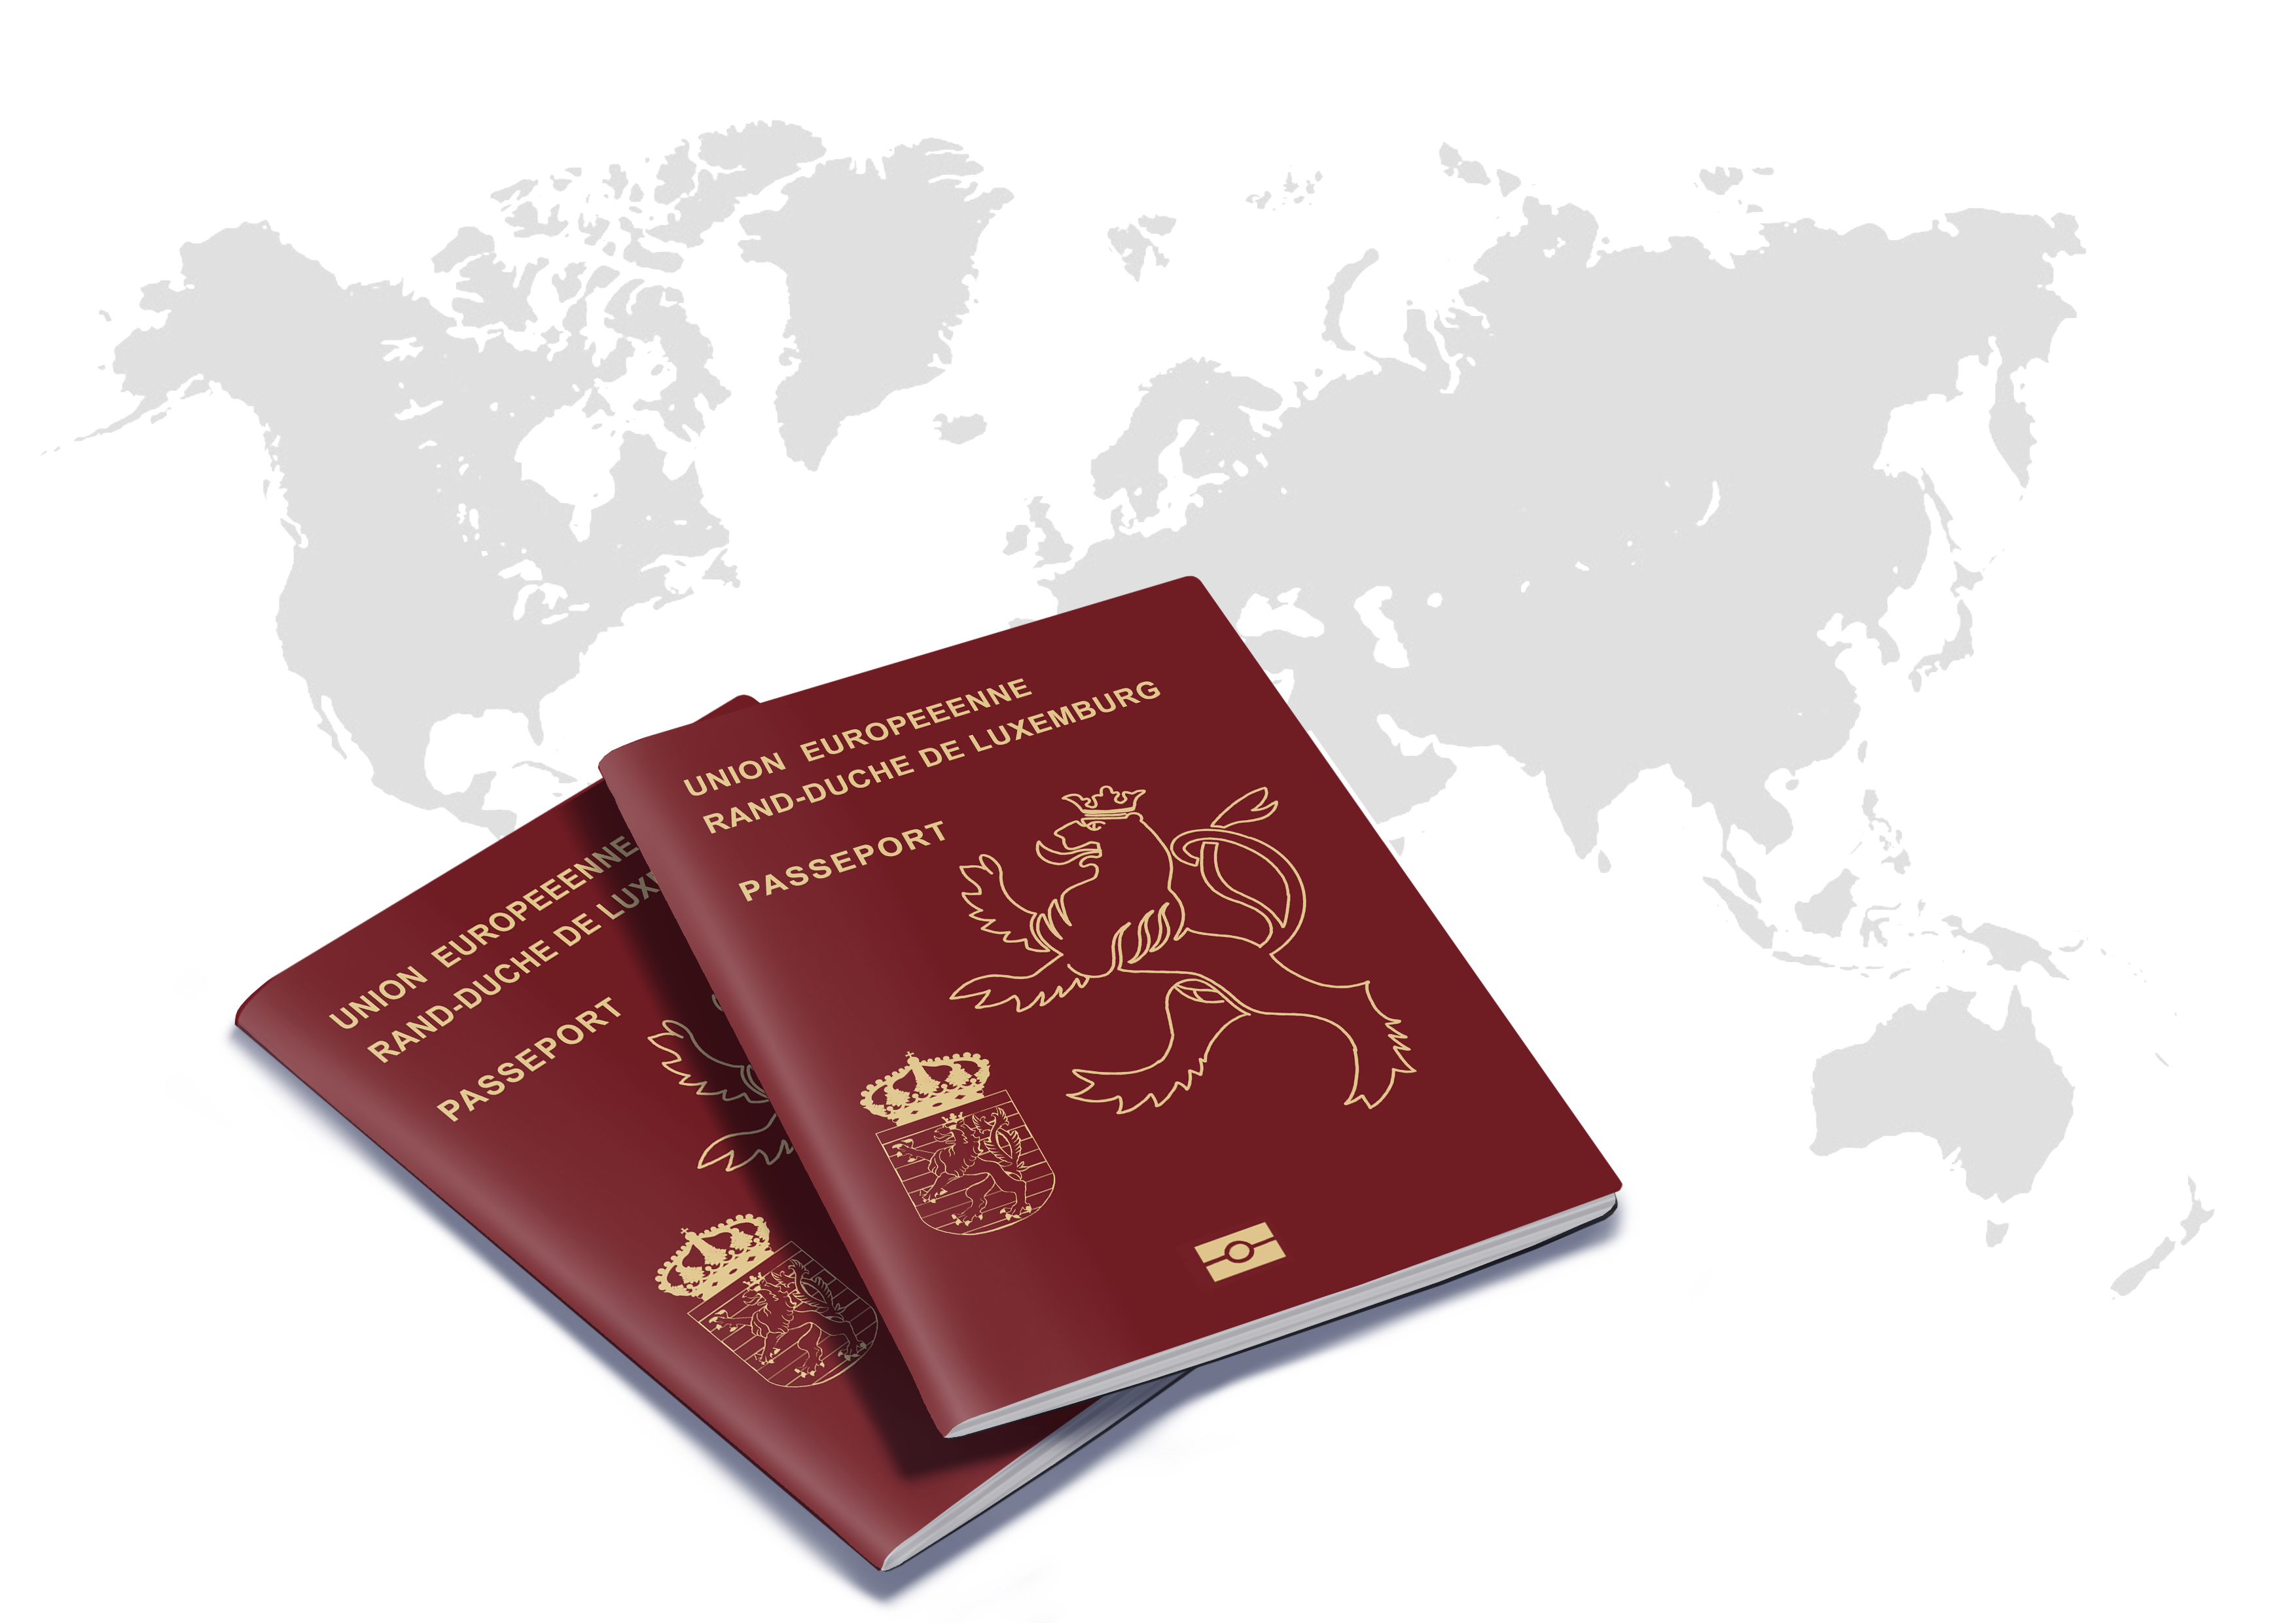 Паспорта Люксембурга, гражданство которого могут получить россияне, украинцы и белорусы